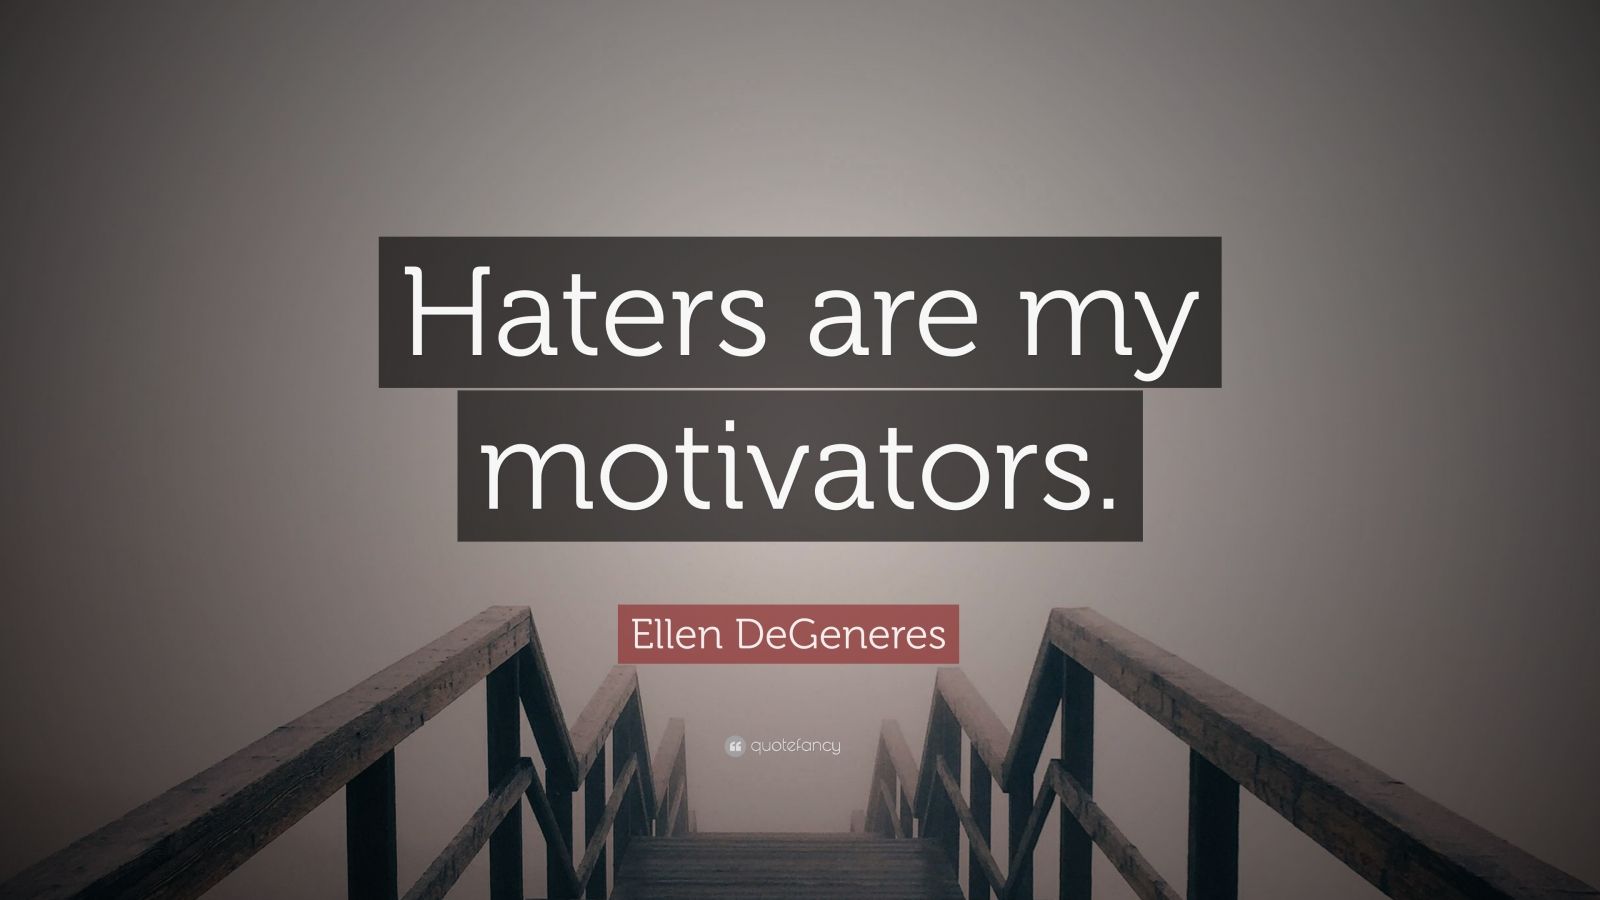 Ellen DeGeneres Quote: “Haters are my motivators.” (12 wallpapers